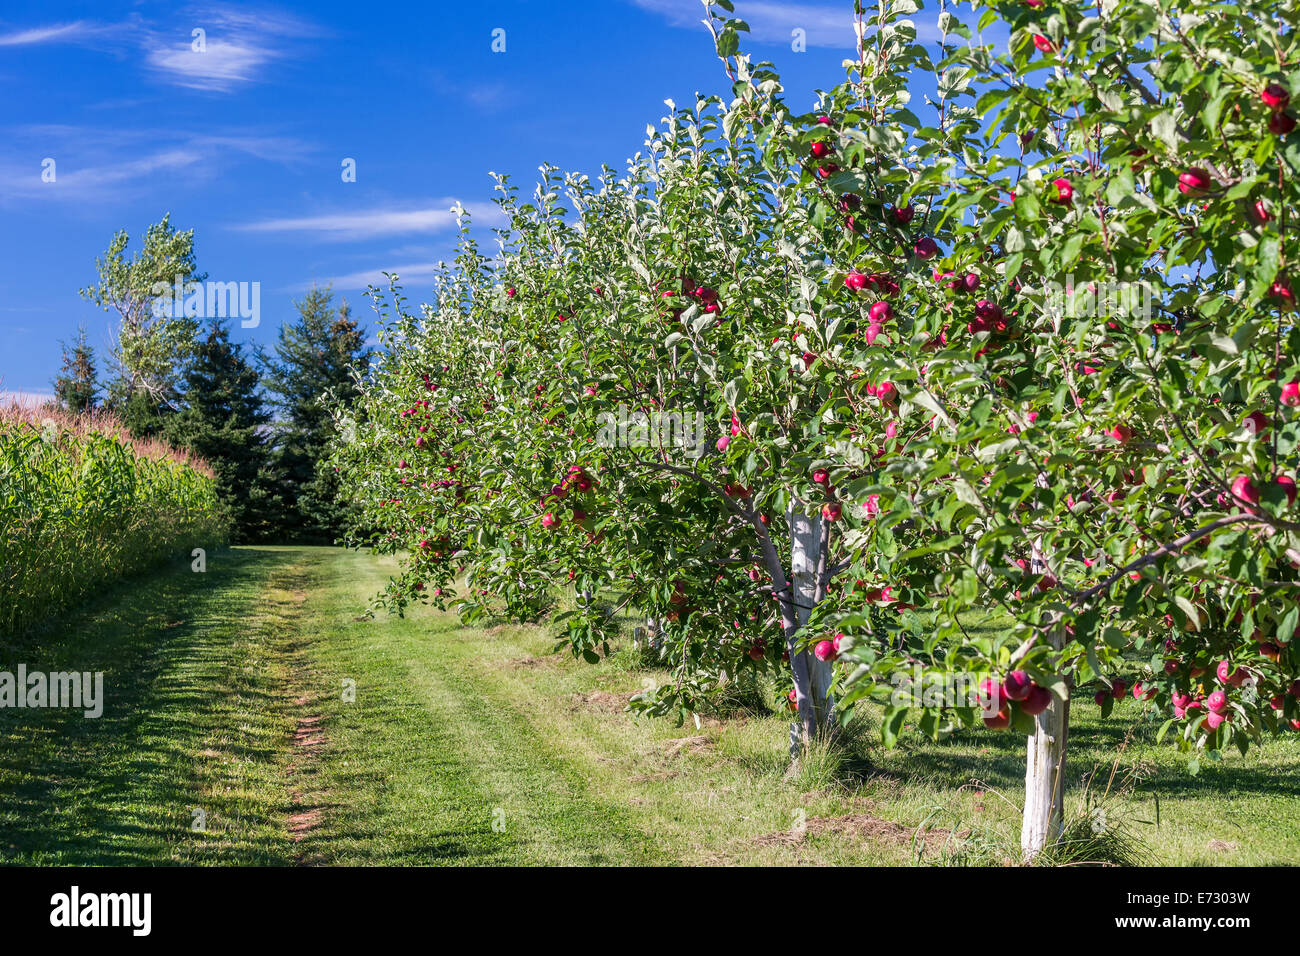 Hilera de árboles de manzana en un huerto de manzanas. Foto de stock